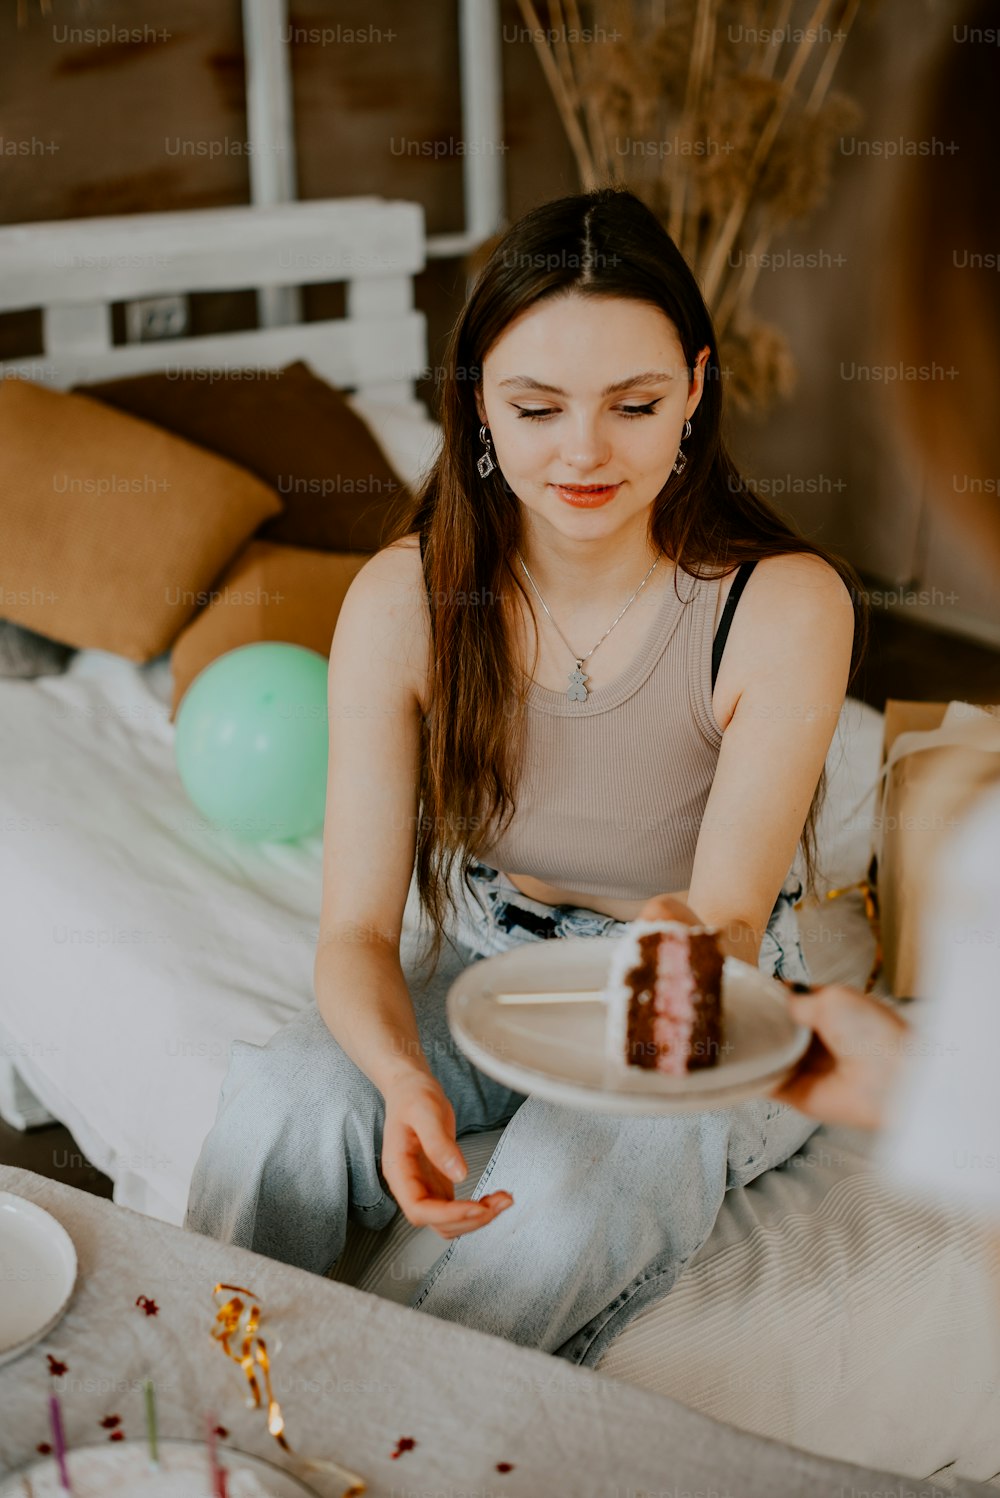 une femme assise sur un lit tenant une assiette avec un morceau de gâteau dessus